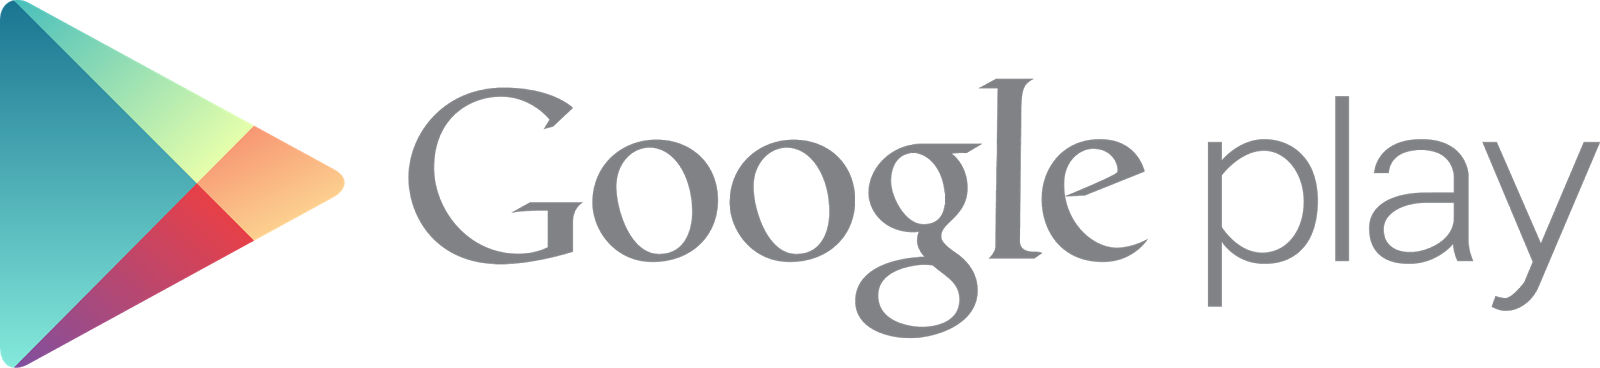 جوجل تقوم بحذف تطبيق من متجرها جوجل بلاى Google Play يهدف إلى خداع المستخدمين وسرقة بياناتهم